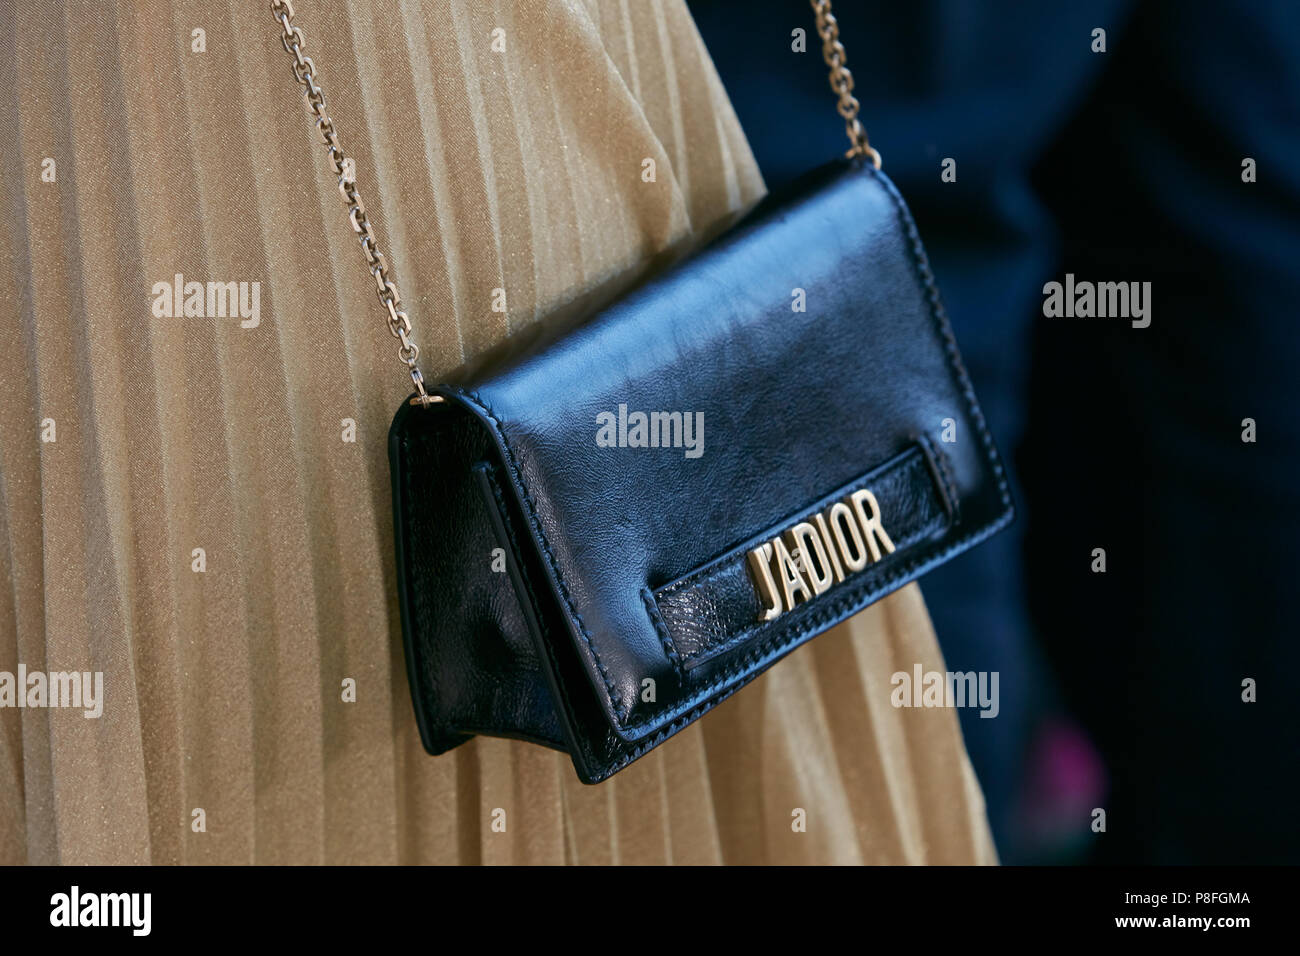 Milano - 17 giugno: donna in pelle nera - Dior borsa beige e gonna  plissettata prima di Prada fashion show, la Settimana della Moda Milanese  street style su Giugno 17, 2018 Foto stock - Alamy